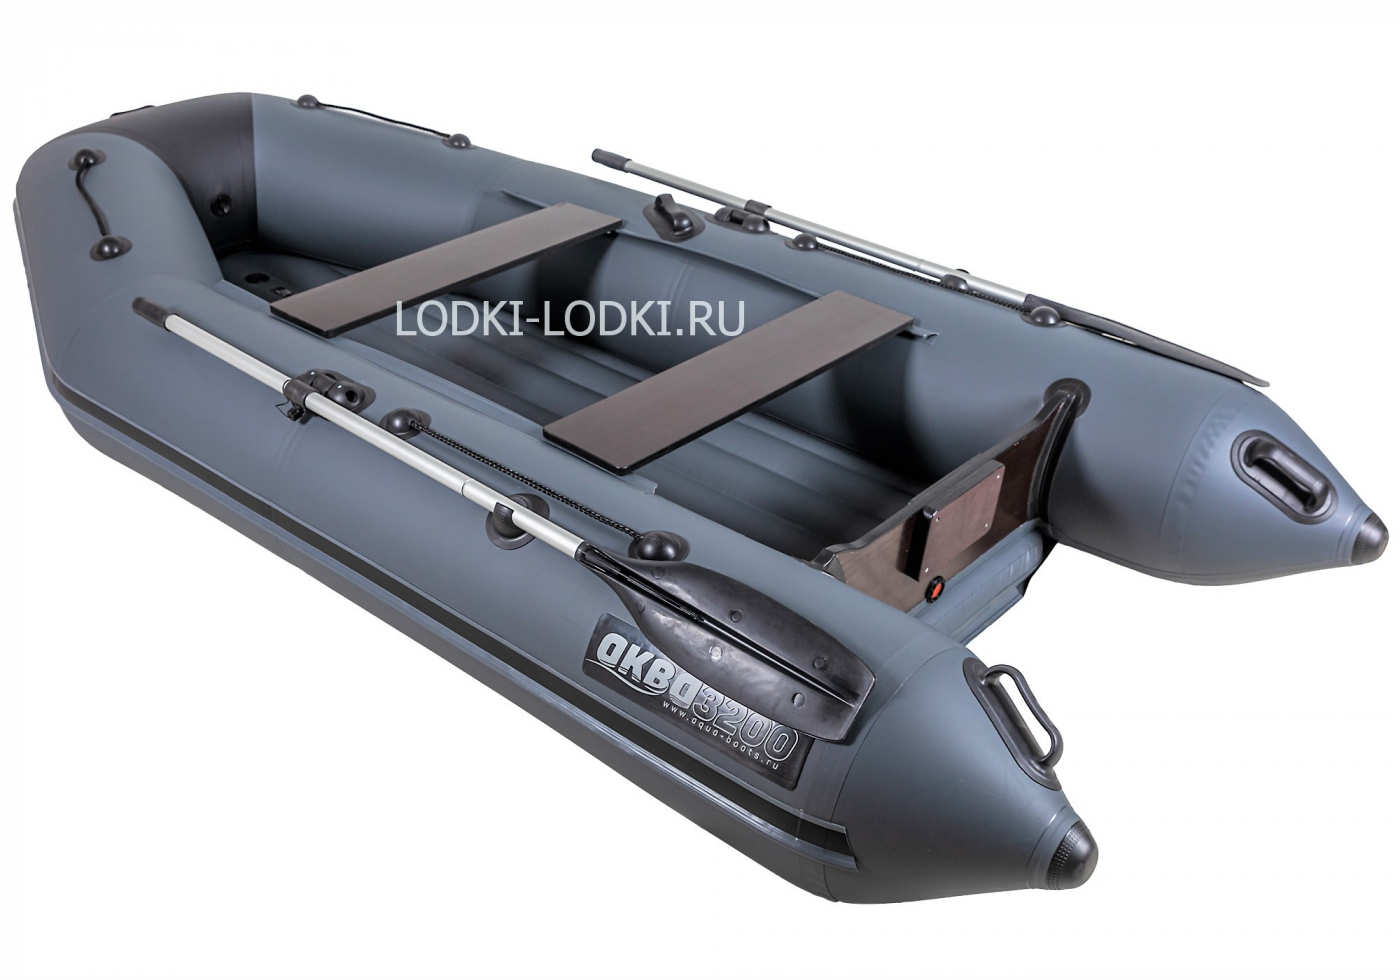 Аква-3200 НДНД графит-черный (Лодка ПВХ под мотор) - купить у официальногодилера в Москве по цене 39 000 р. с доставкой: характеристики, отзывы, видео